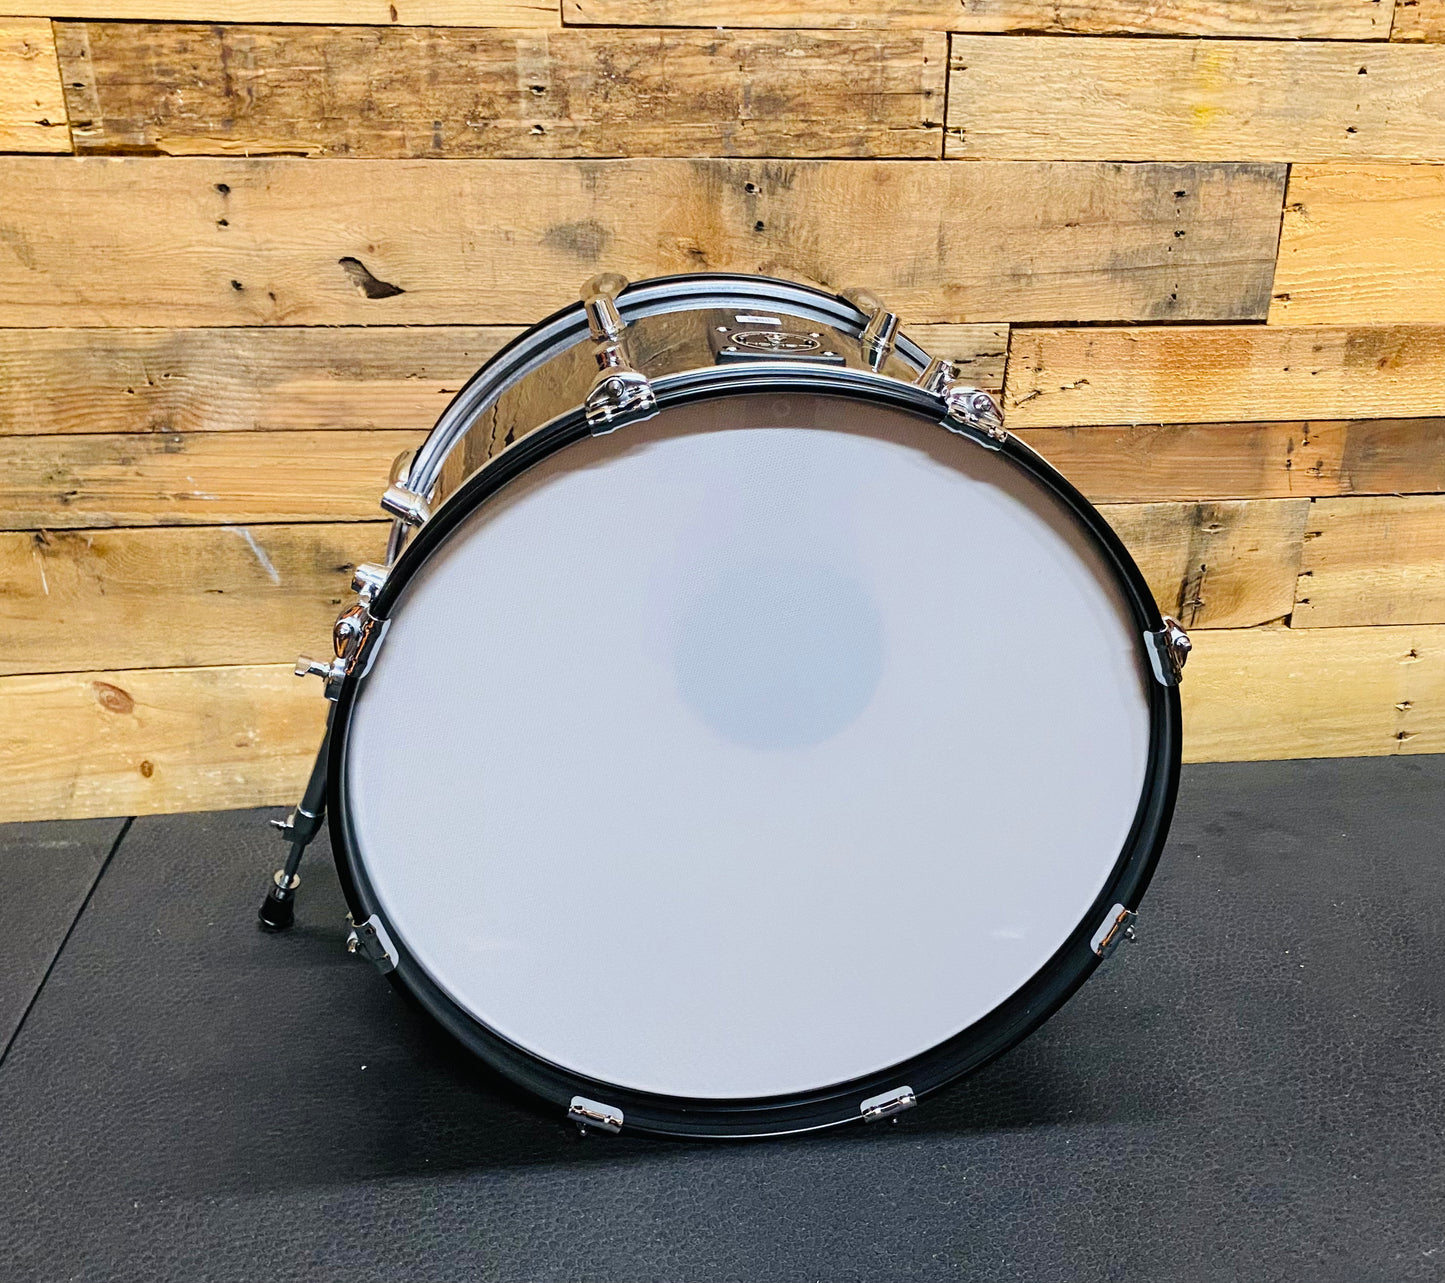 Used Lemon 20”x12” Black Sparkle Bass Kick Drum for Roland Alesis